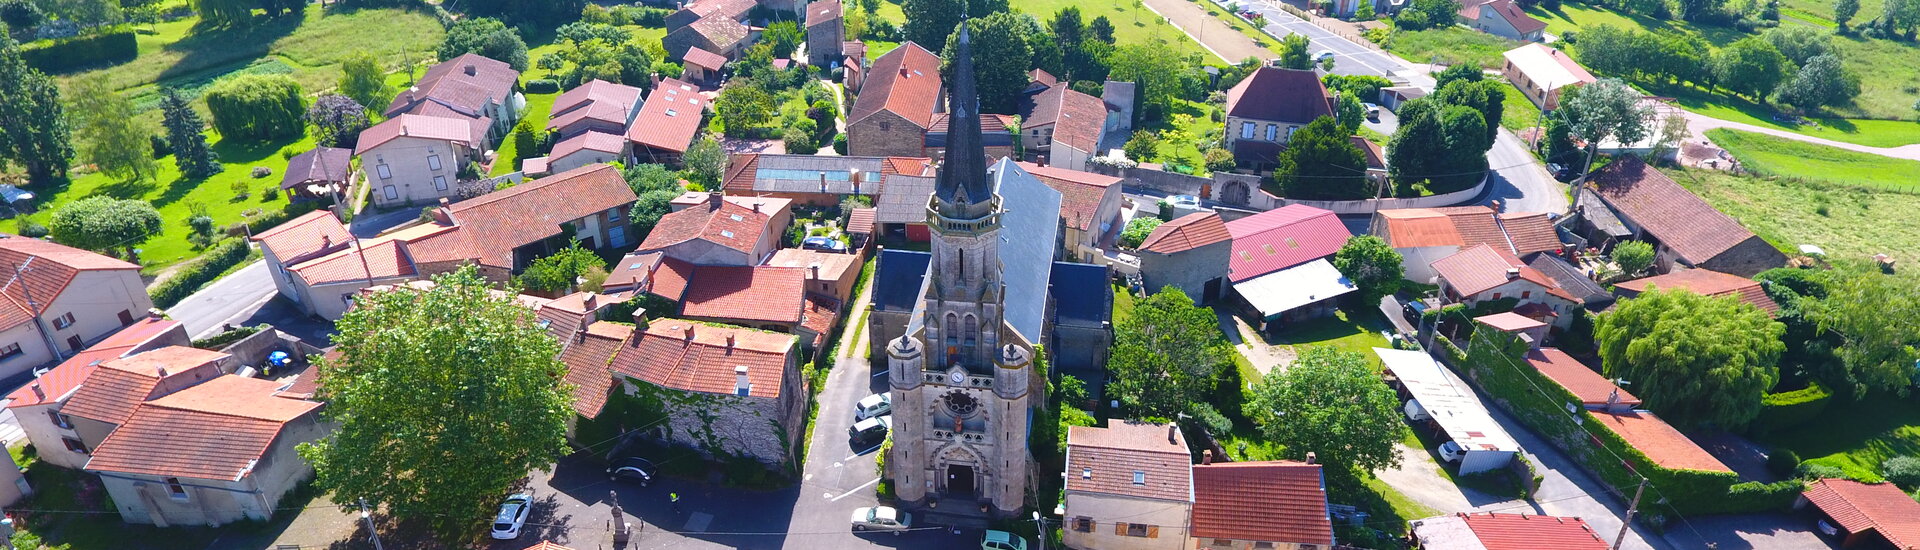 Commune Mairie Teilhède Auvergne Côtes de Combrailles